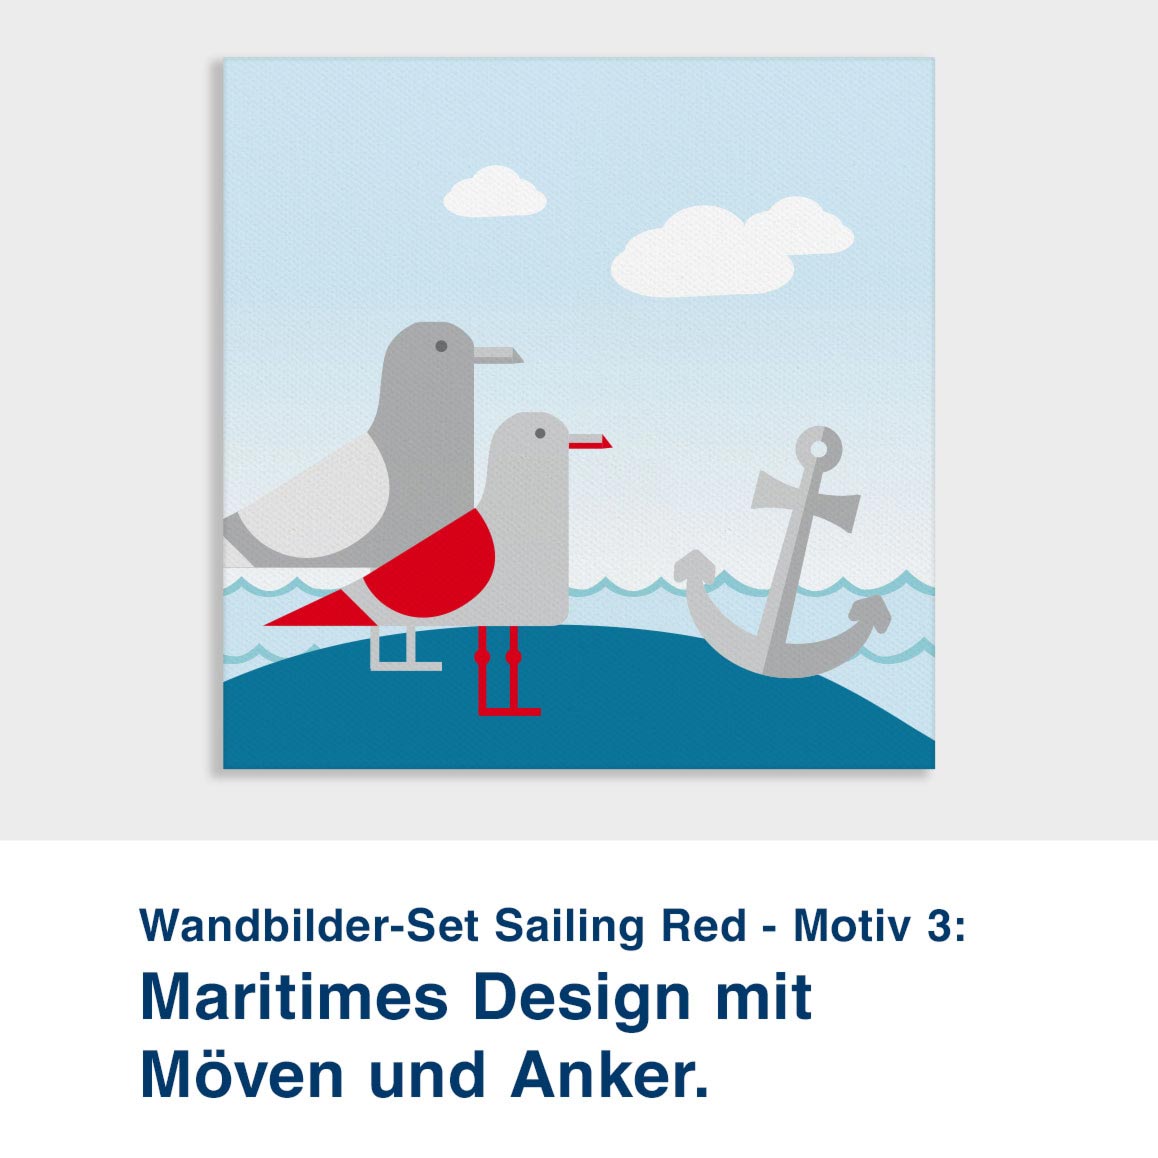 Wandbilder-Set Sailing Red - Motiv 3:  Maritimes Design mit  Möven und Anker.